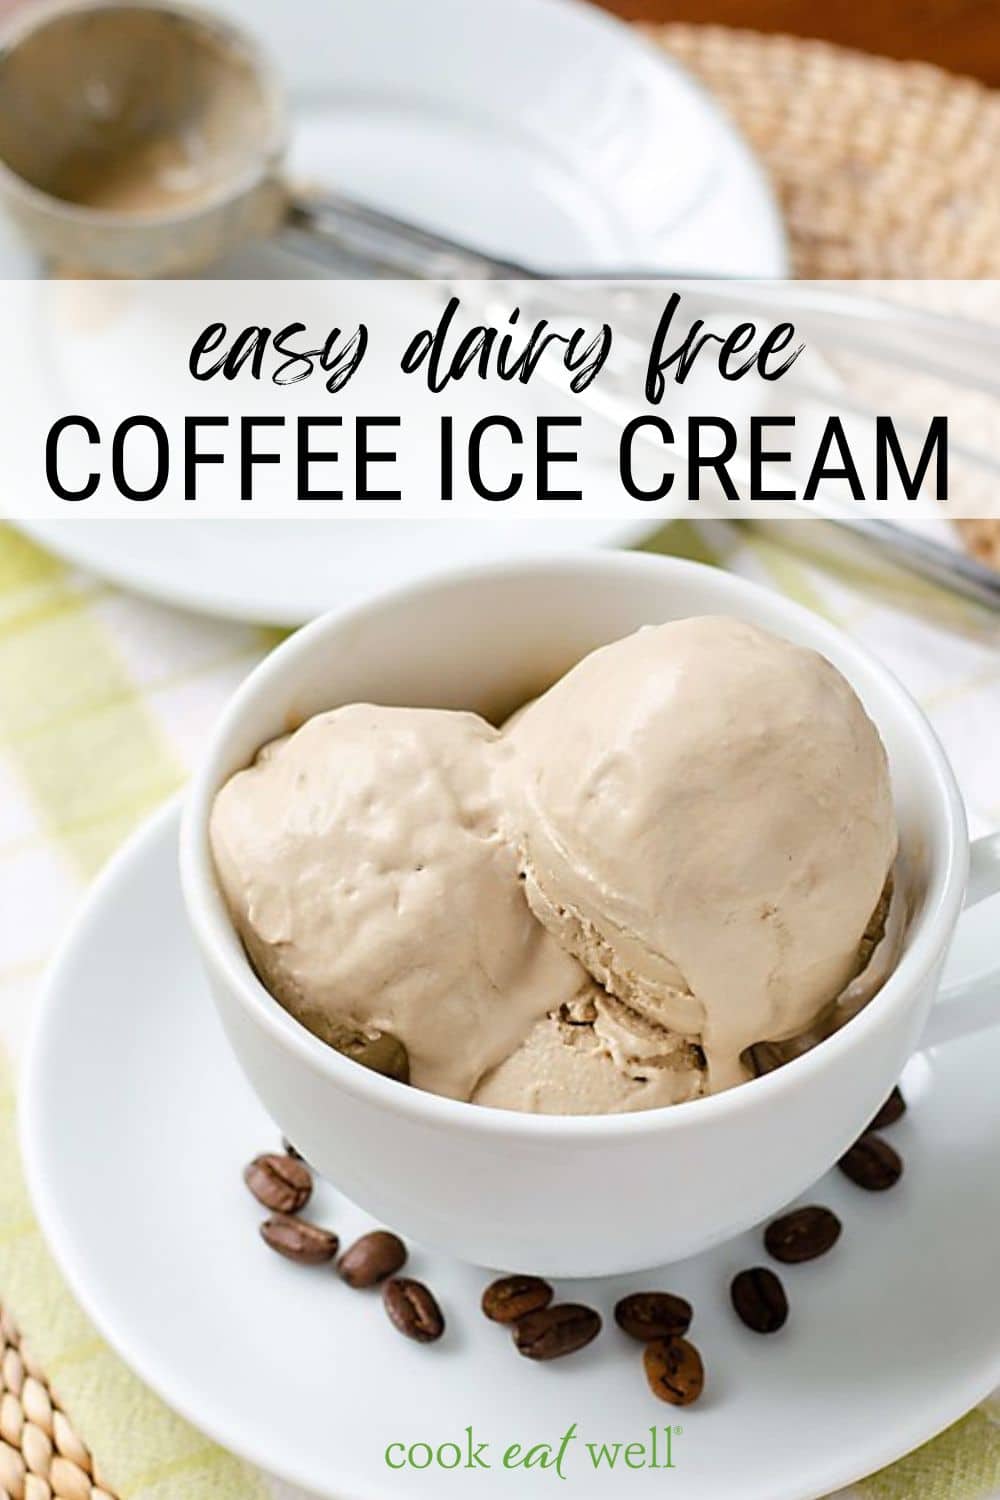 Easy dairy free ice cream